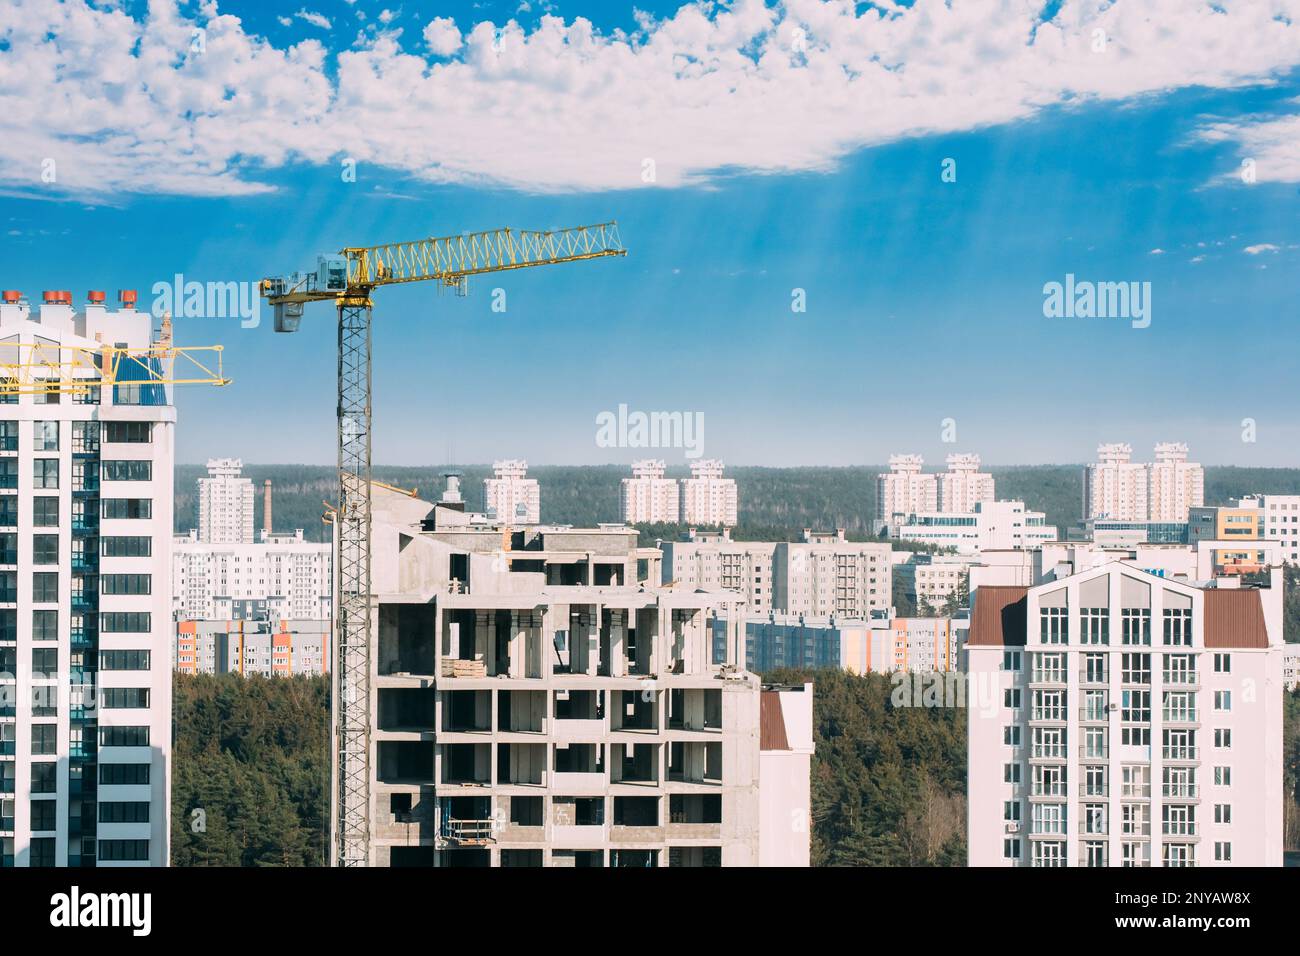 Nuovo concetto di alloggio. Incredibile cielo blu brillante sopra la gru da cantiere. Costruzione e sviluppo di nuovi edifici residenziali a più piani. Concezione Foto Stock